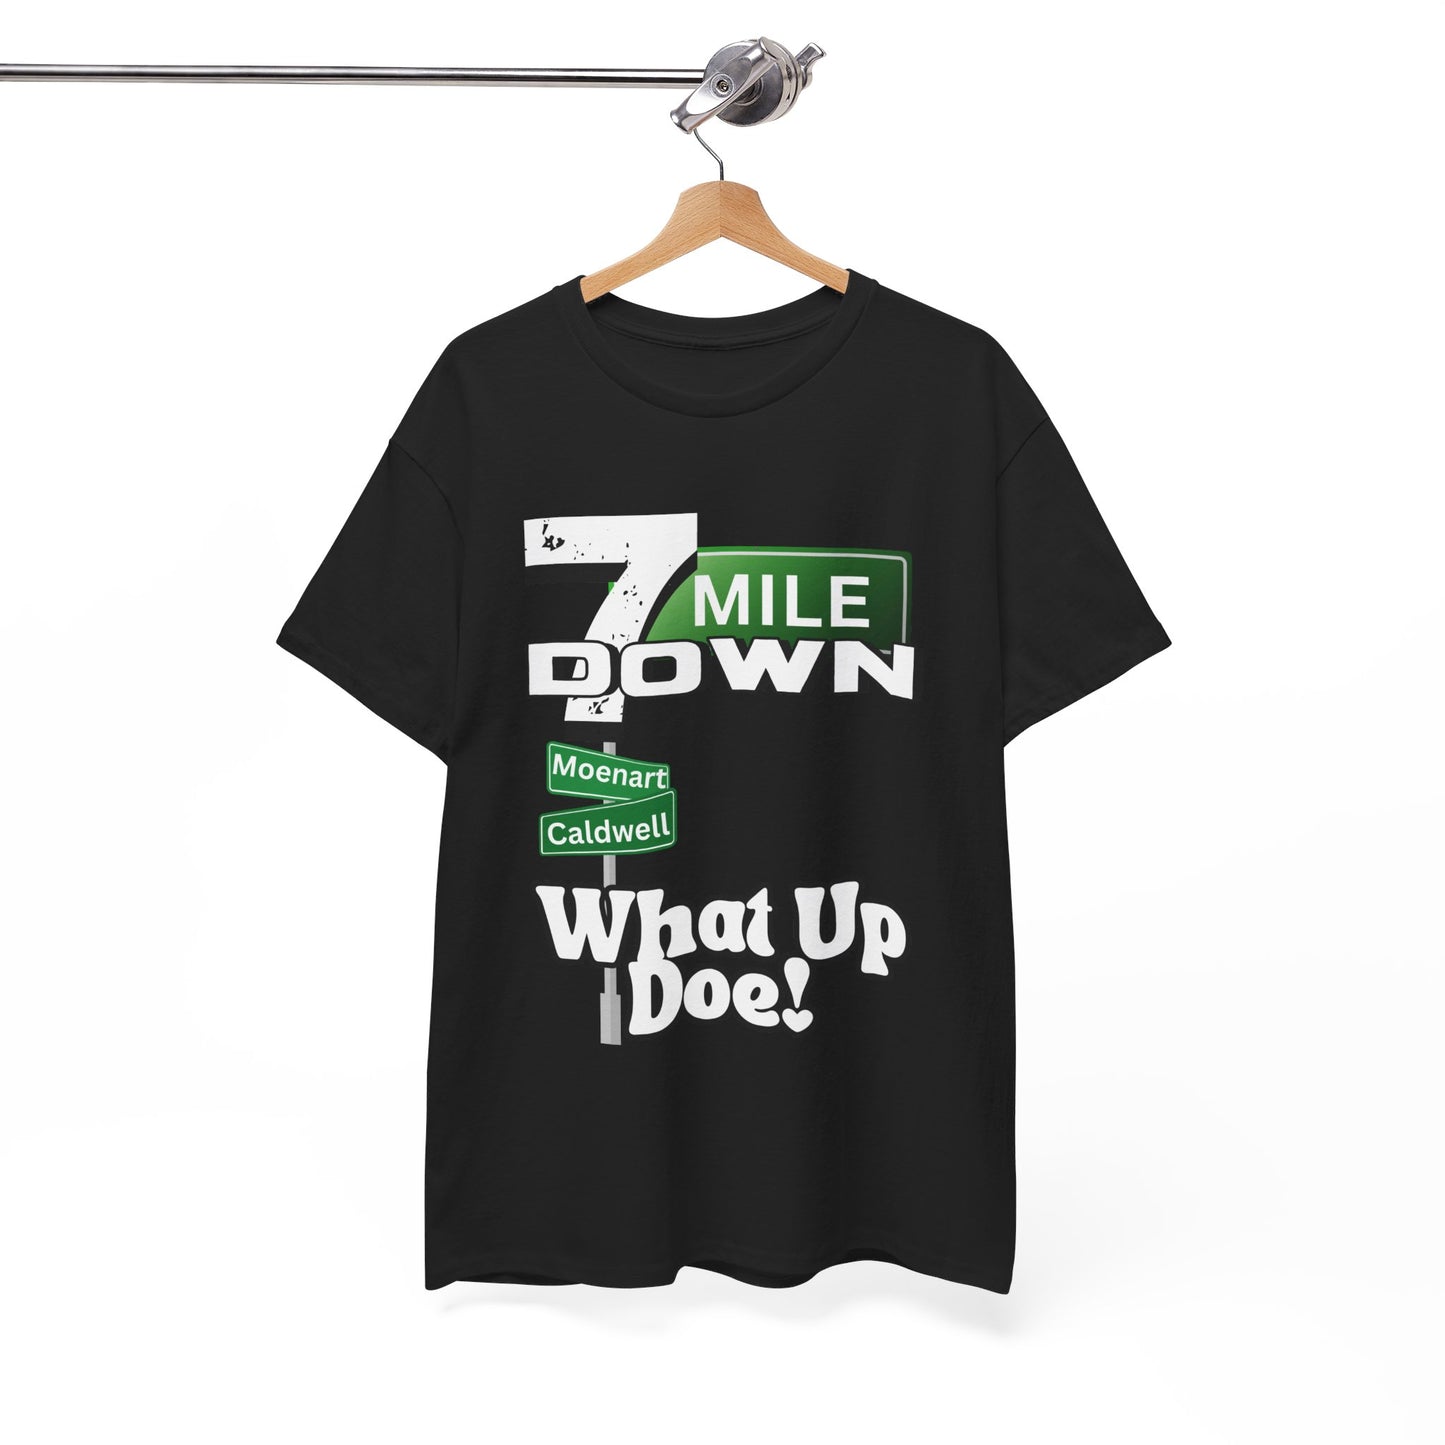 Unisex Heavy Cotton Graphic Design (What Up Doe) T-shirt